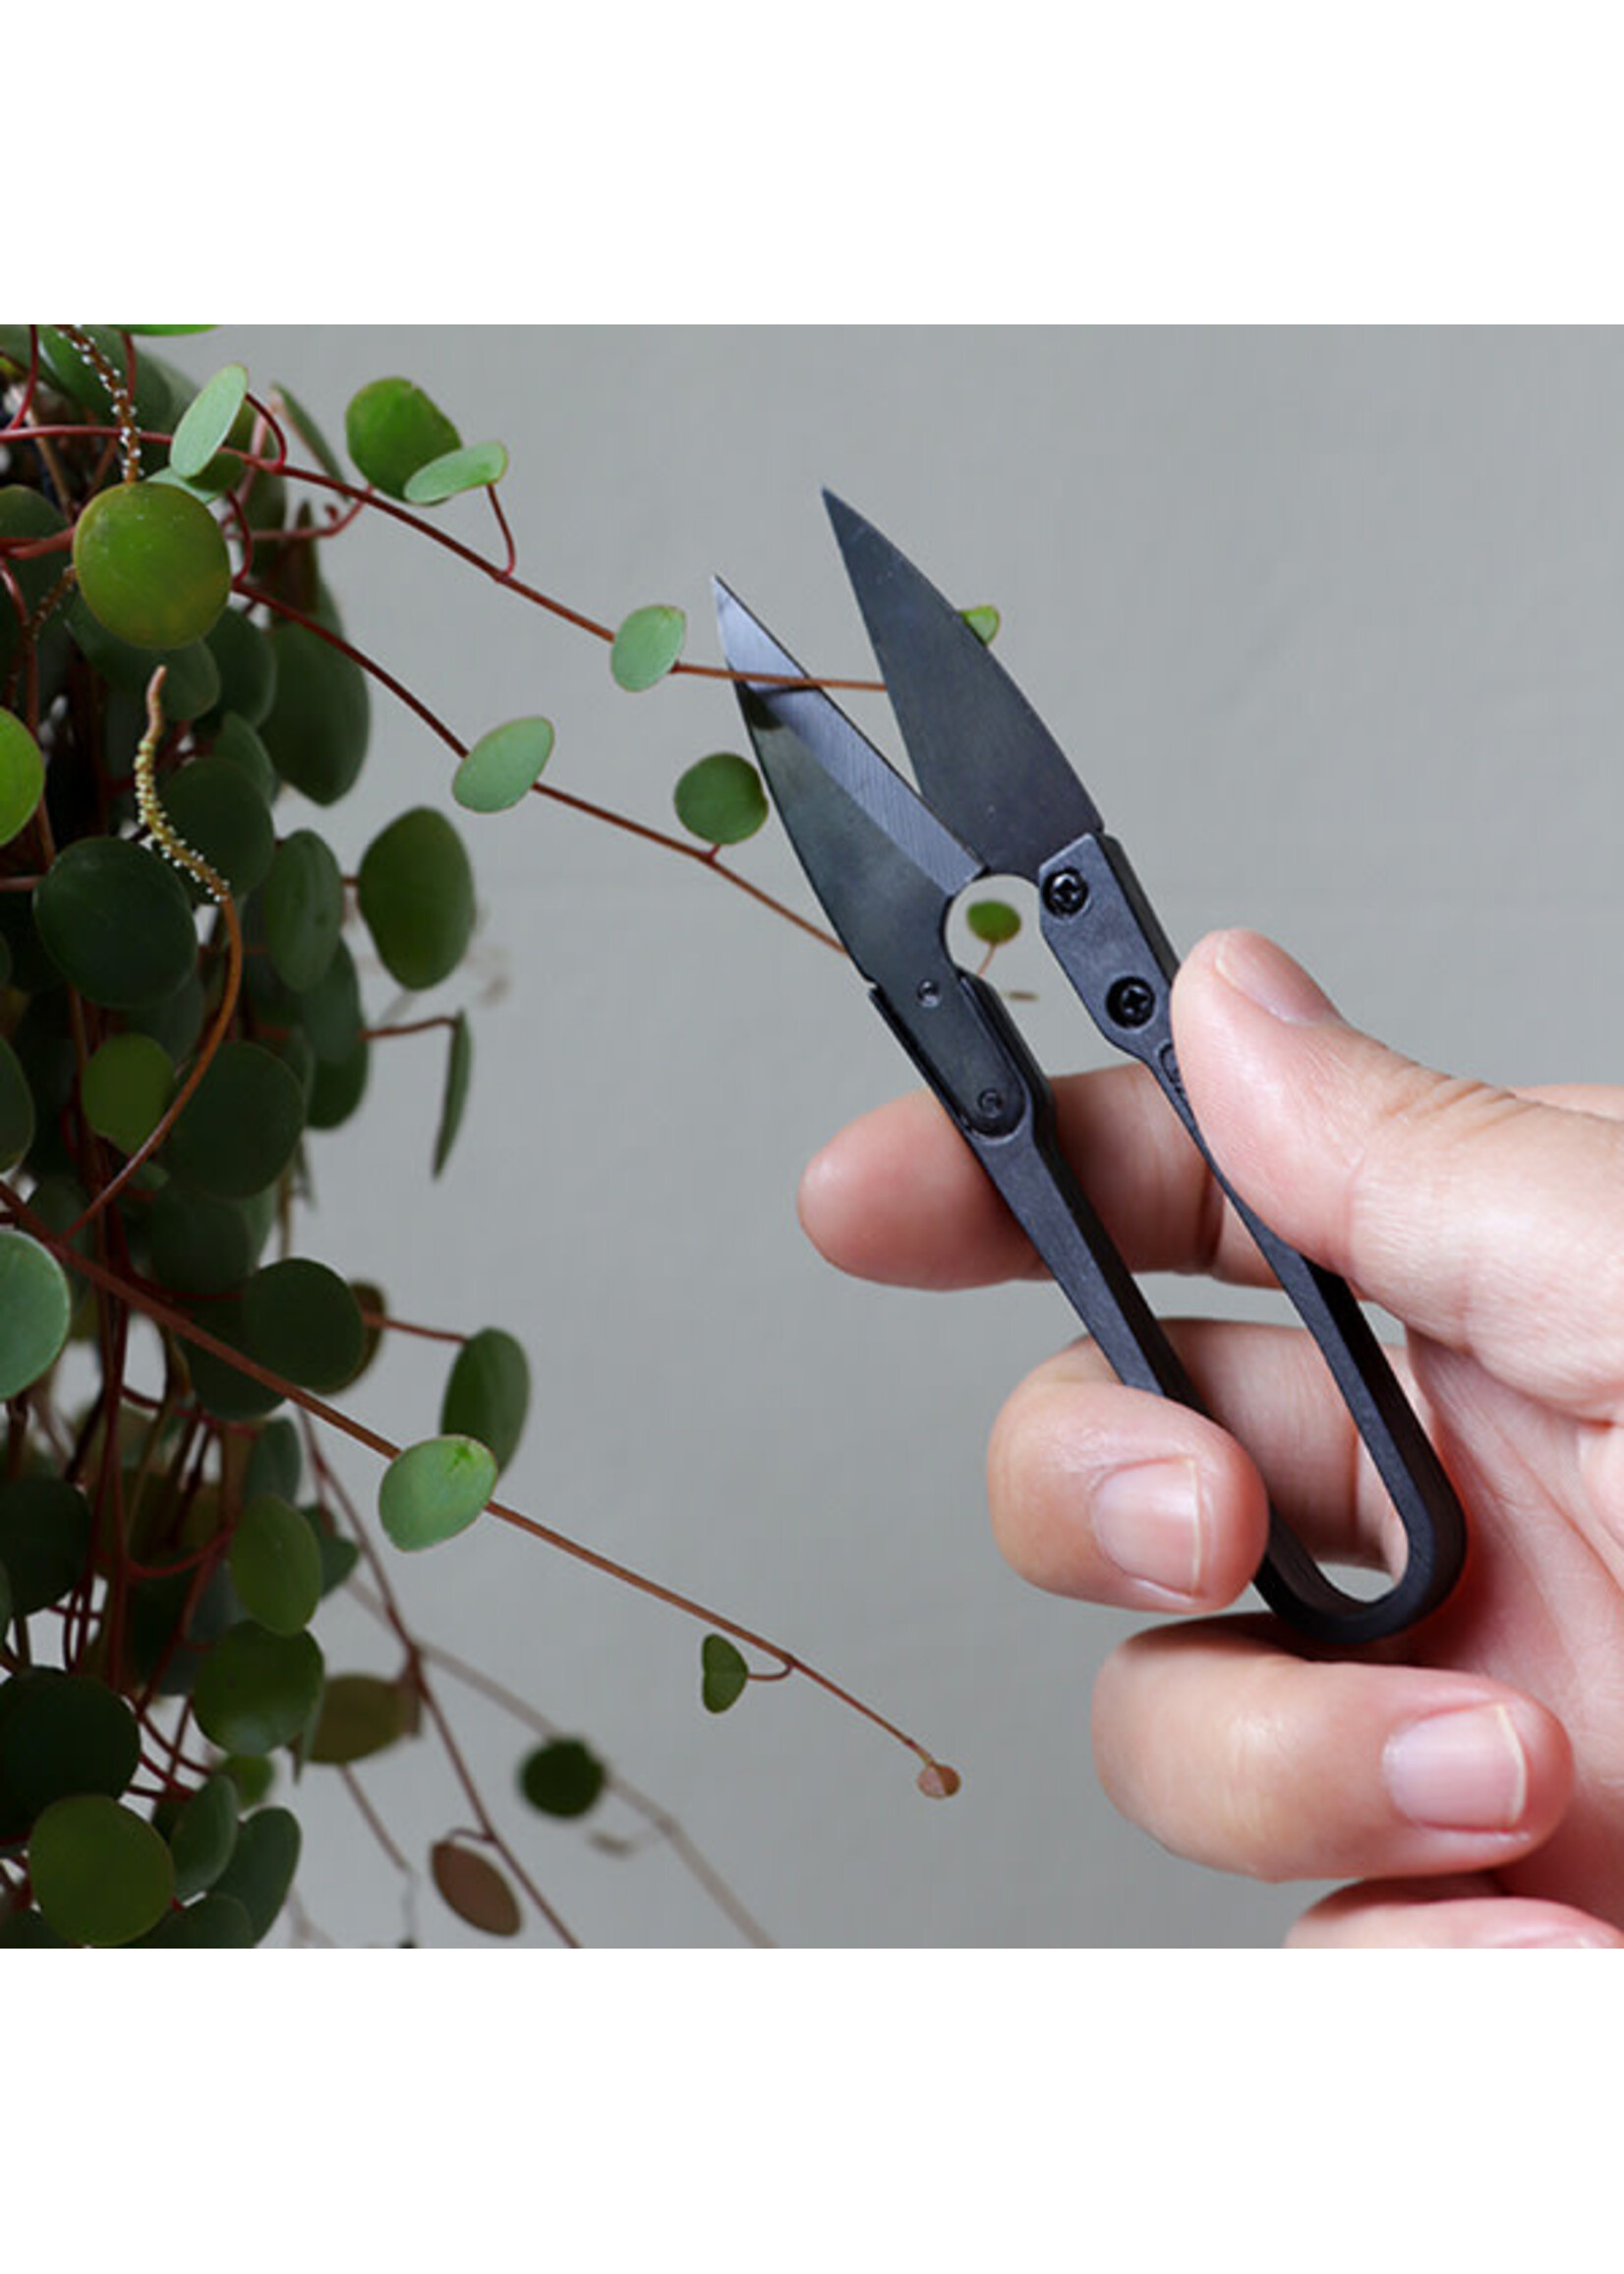 The Good Snips - Bonsai pruning shears